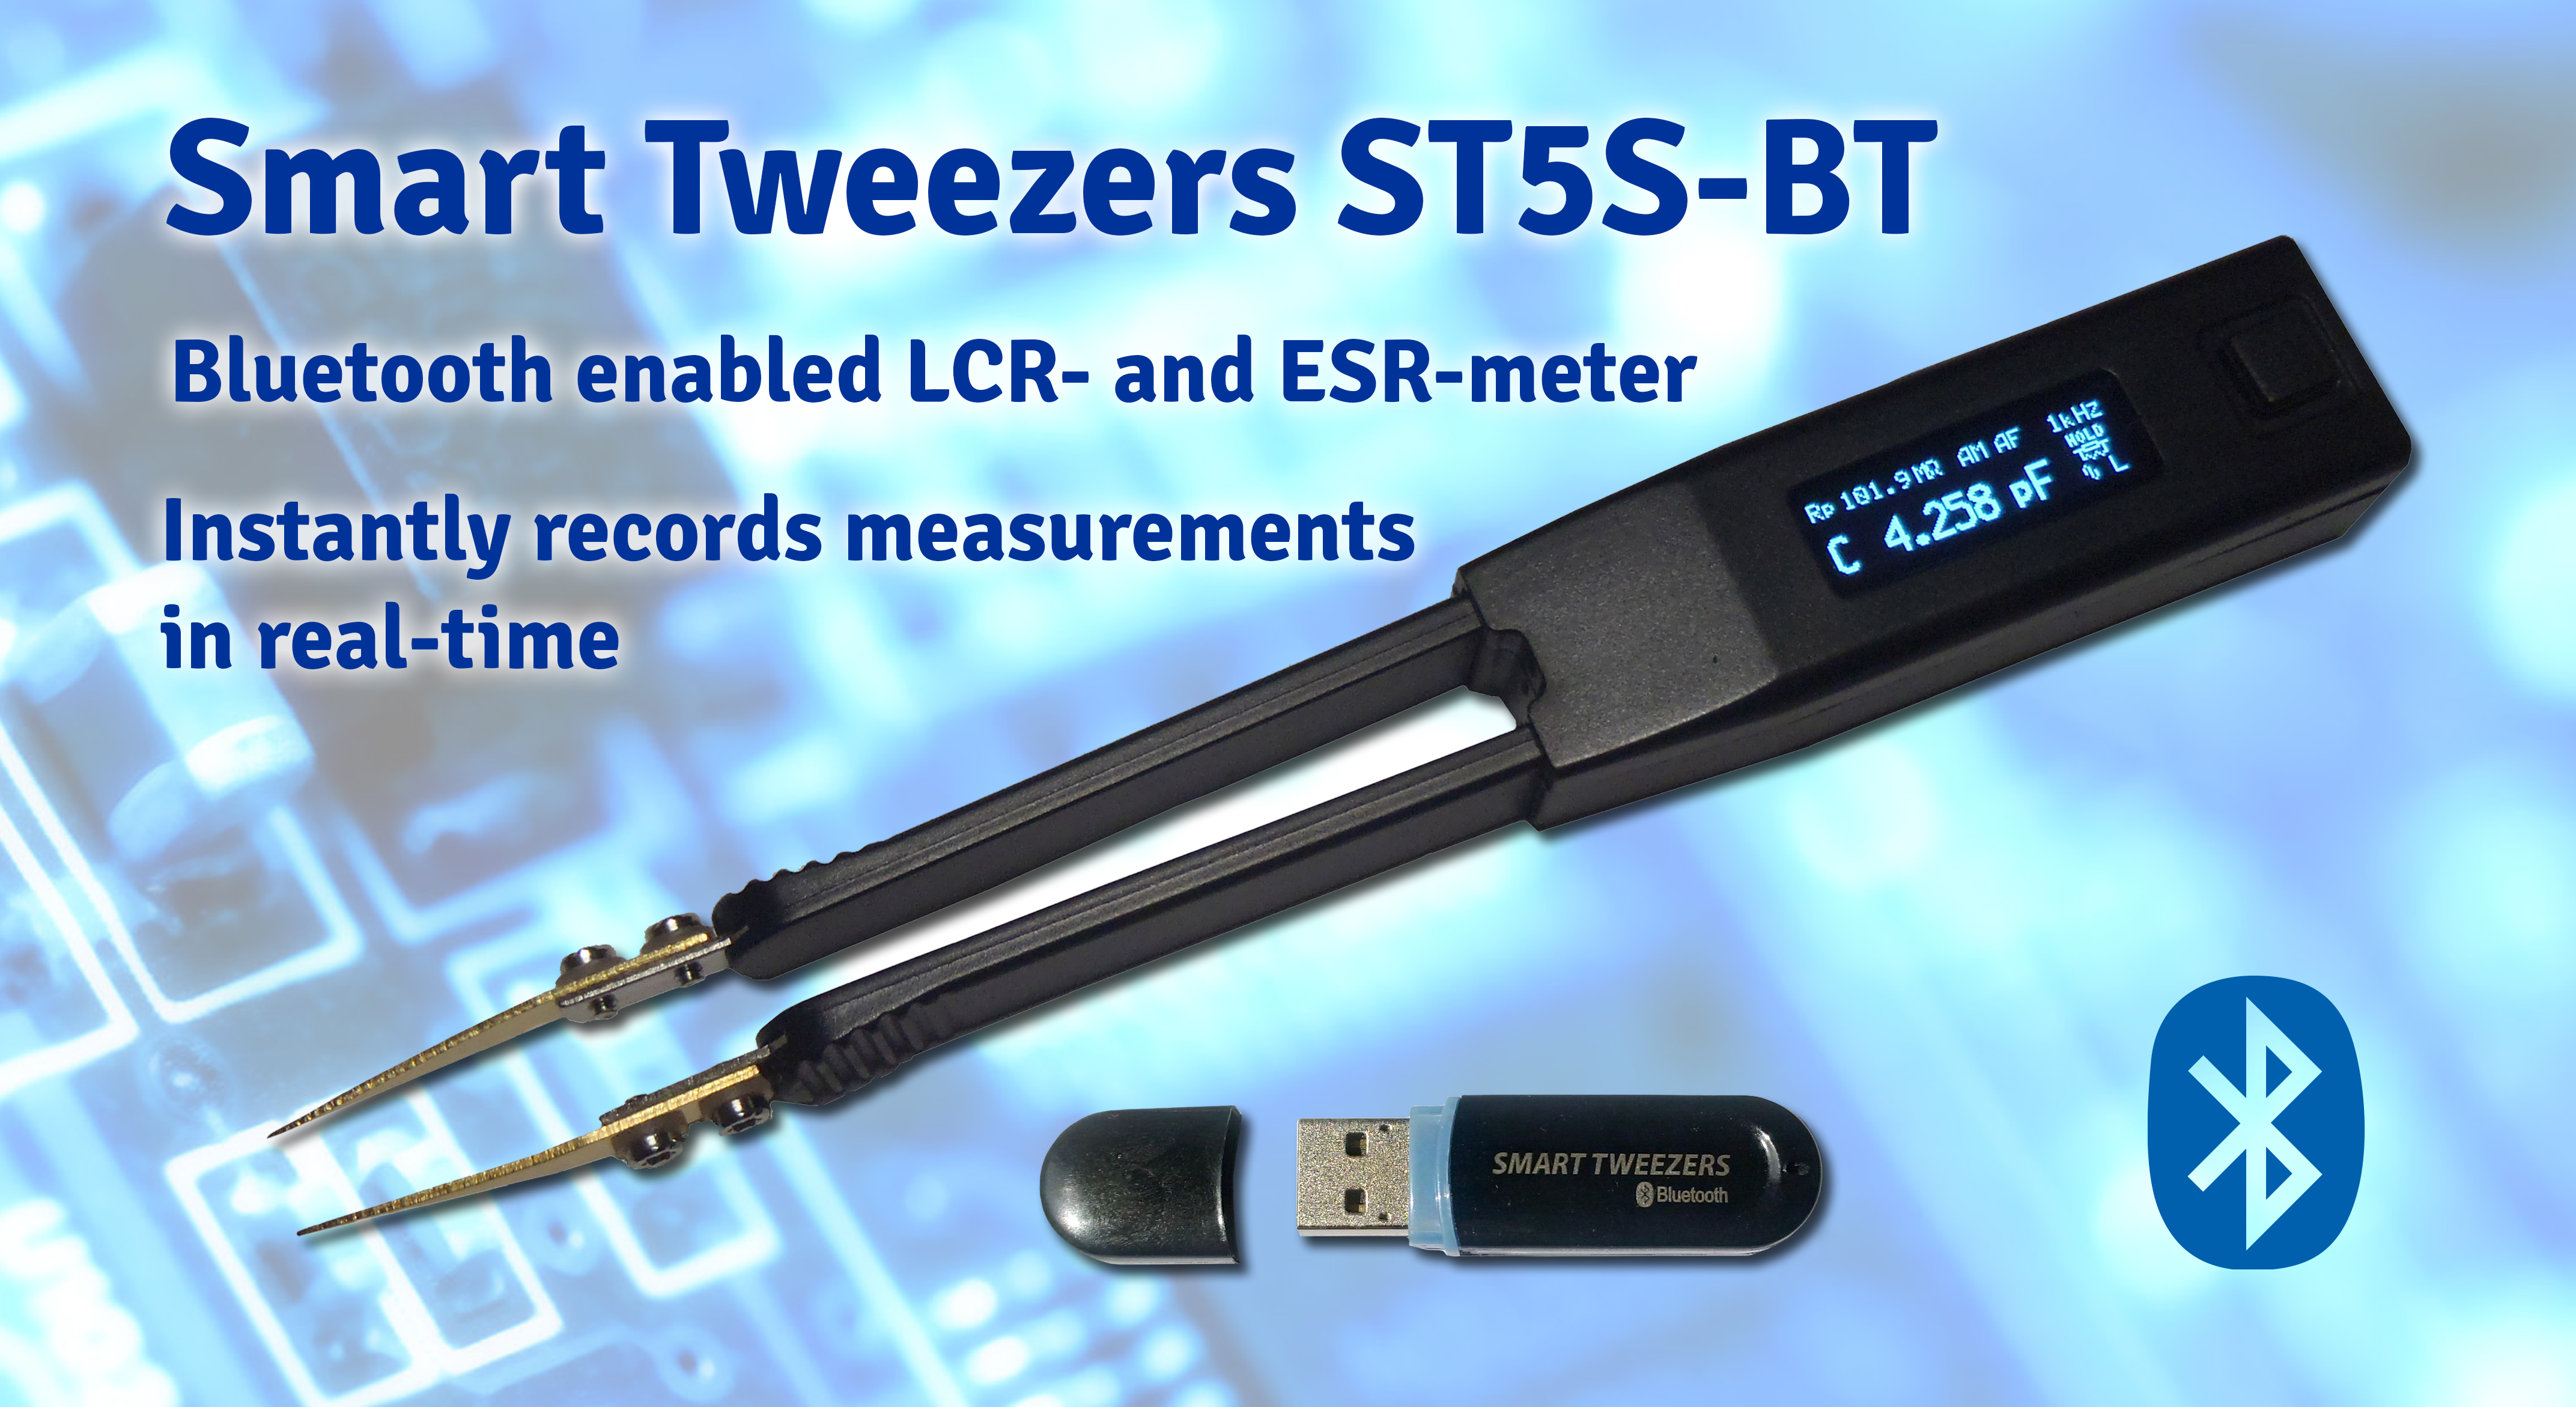 Smart Tweezers ST5S-BT adds Bluetooth functionality to Smart Tweezers